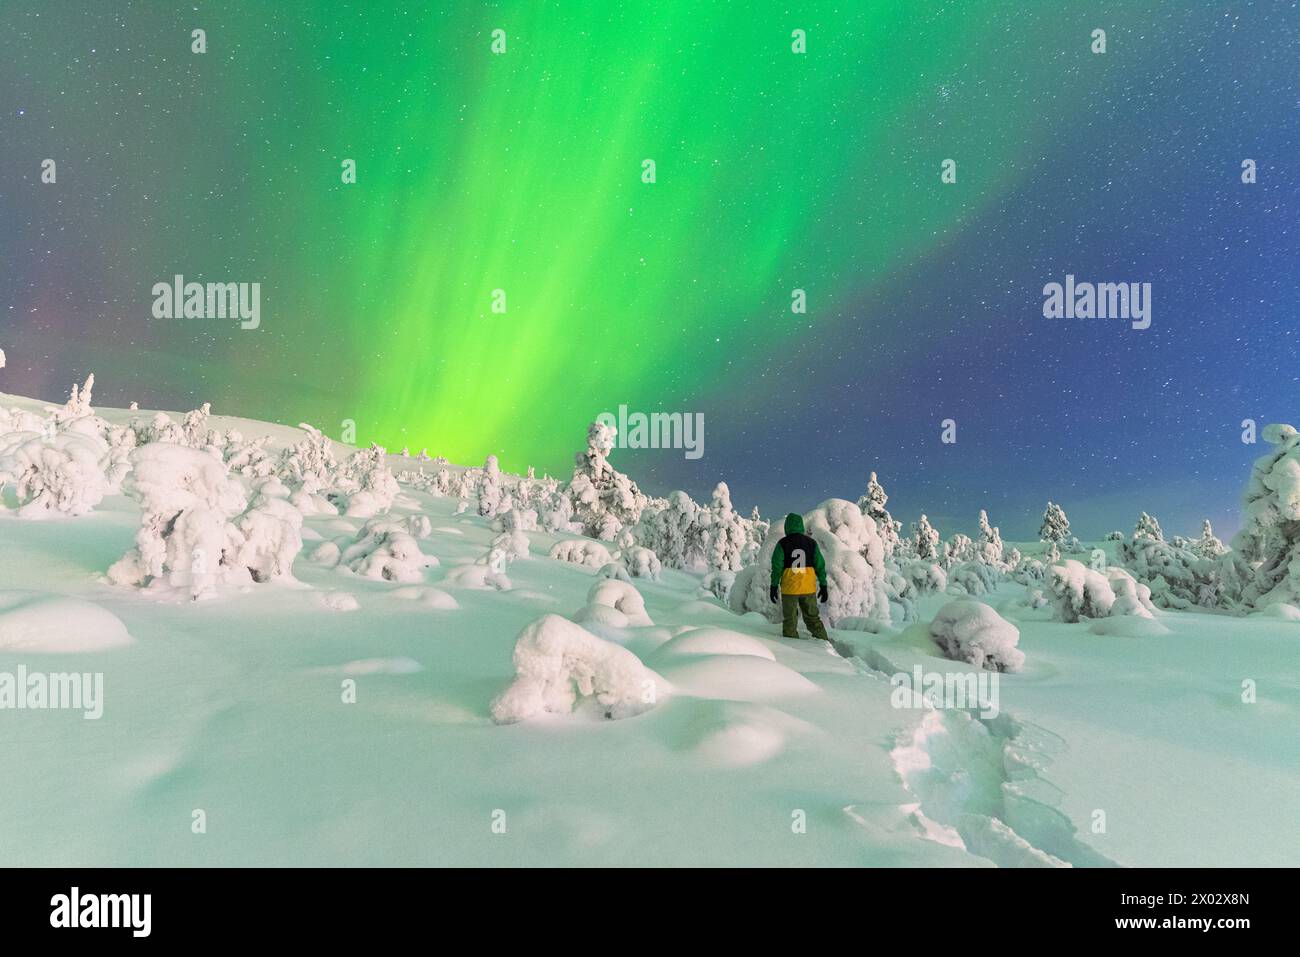 Rückansicht eines Mannes im verschneiten gefrorenen Wald, der die Nordlichter (Aurora Borealis) beobachtet, die den Himmel färben Stockfoto